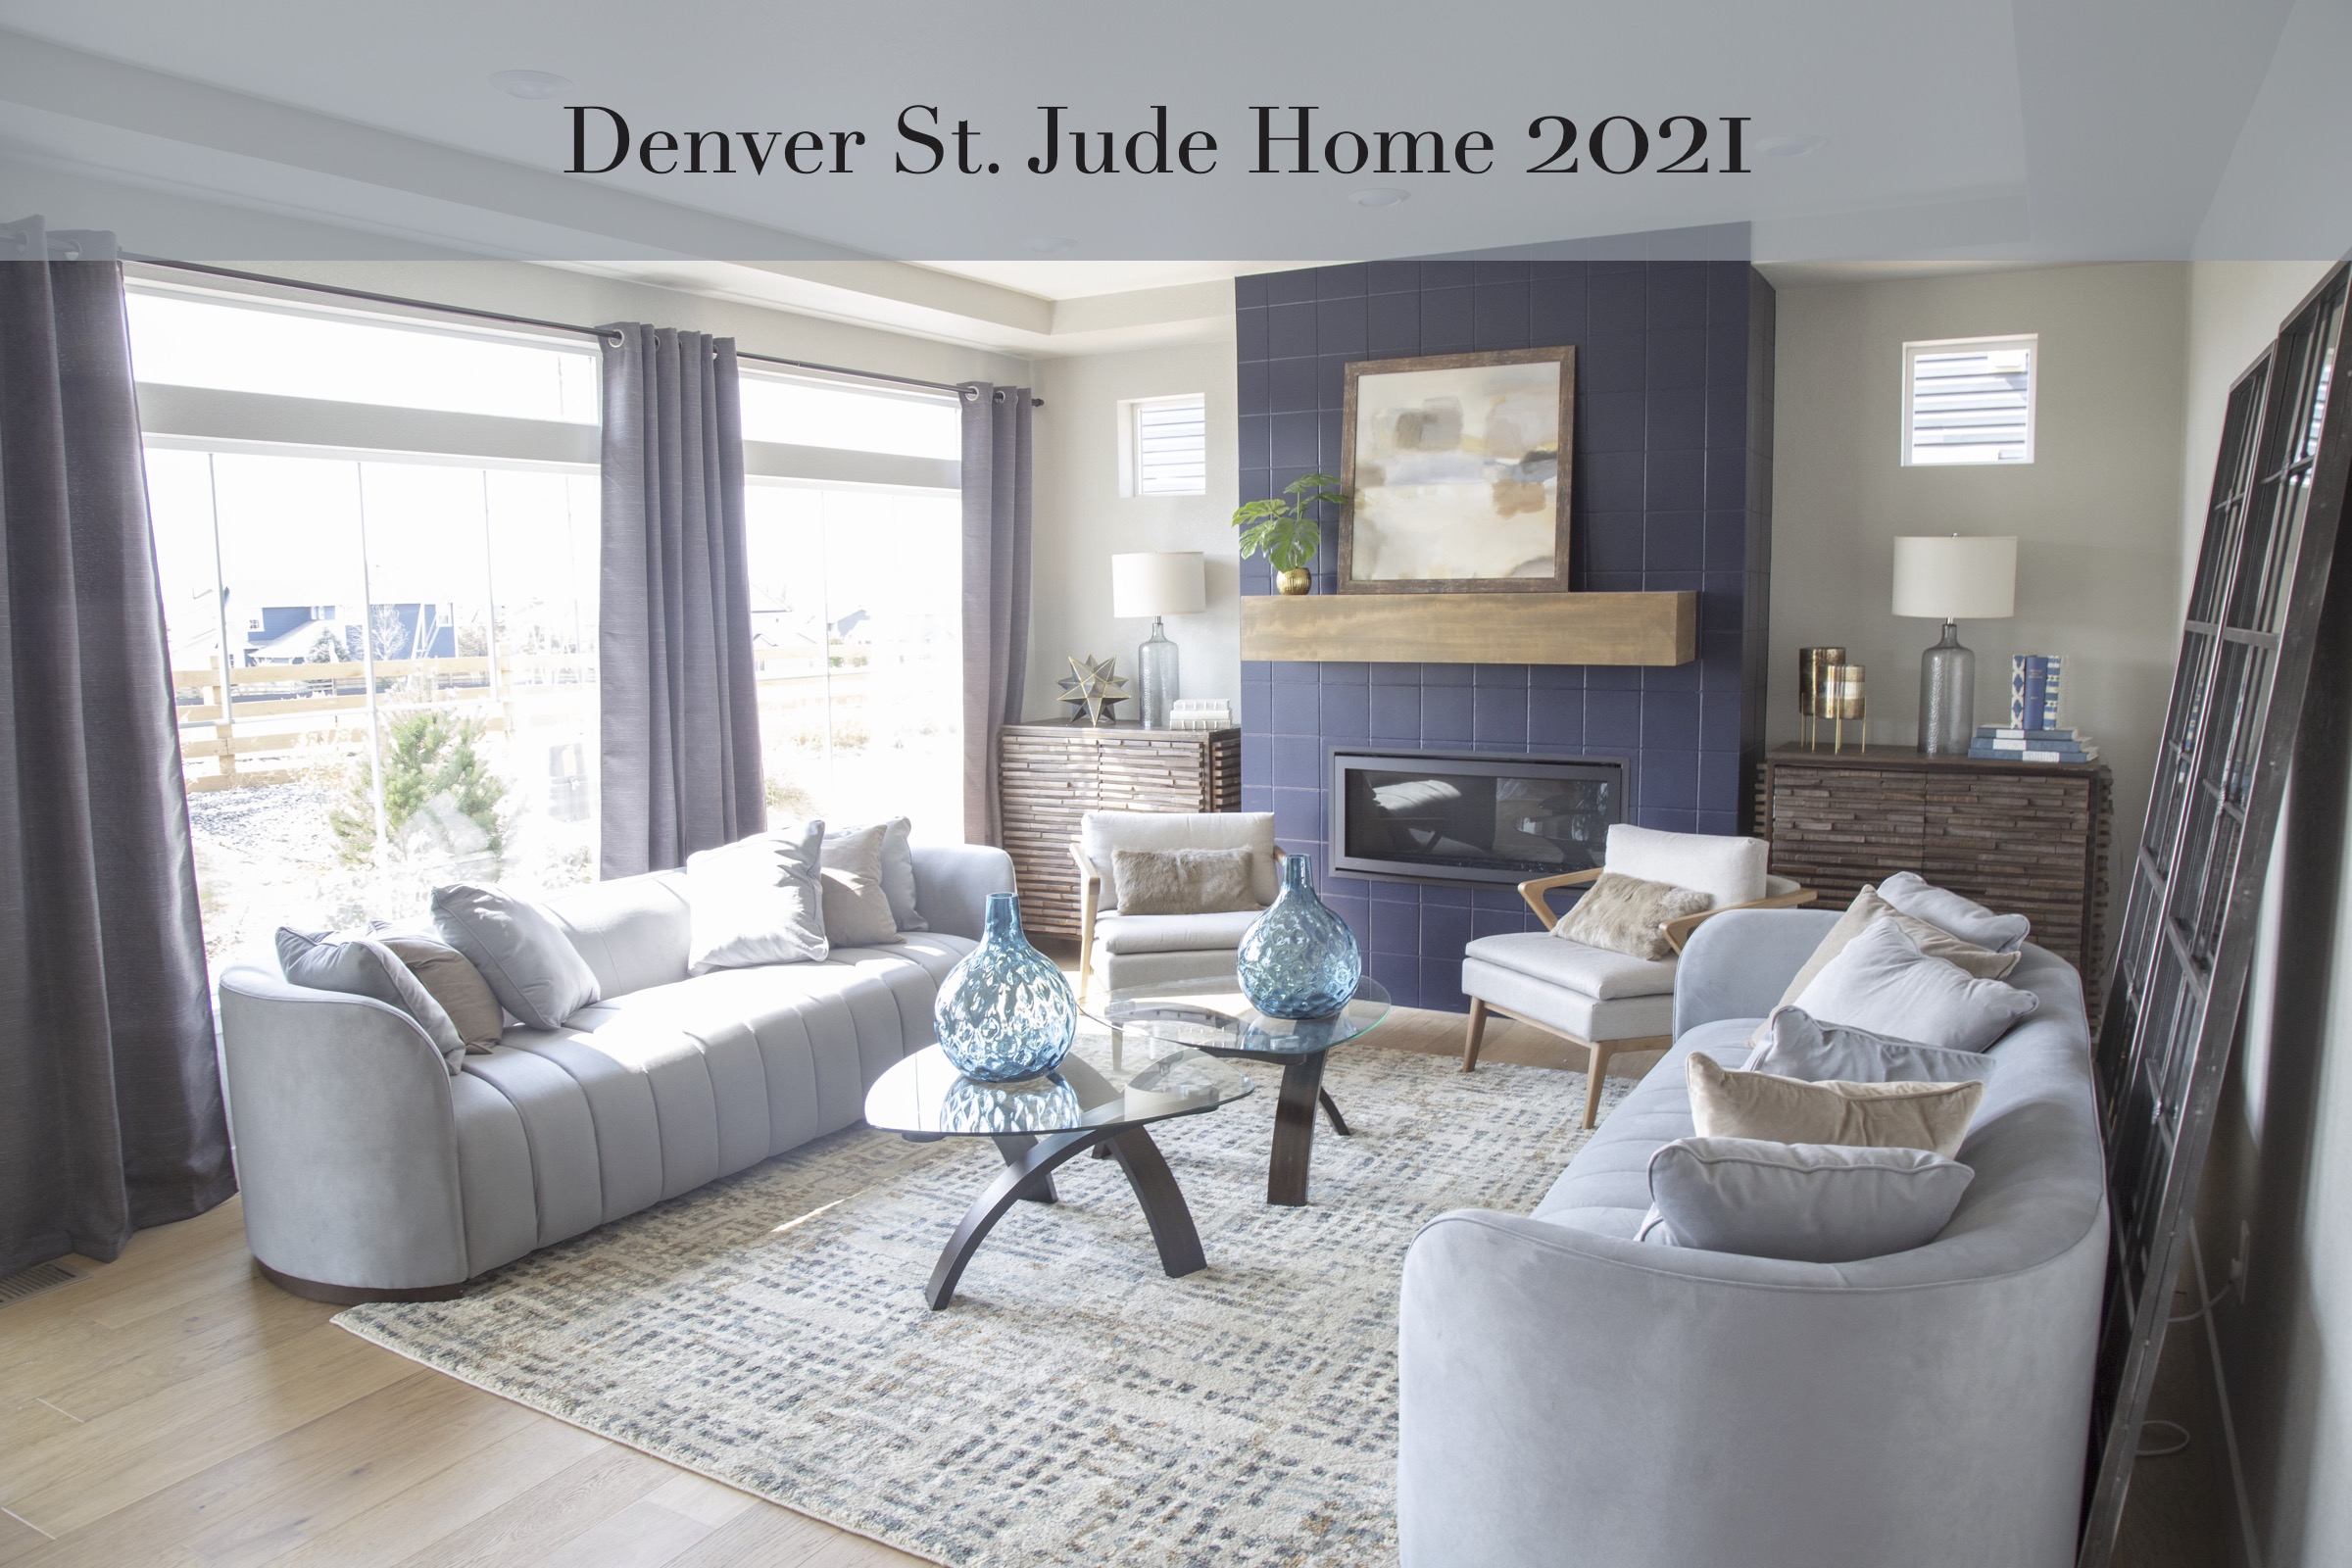 Denver St. Jude Home 2021